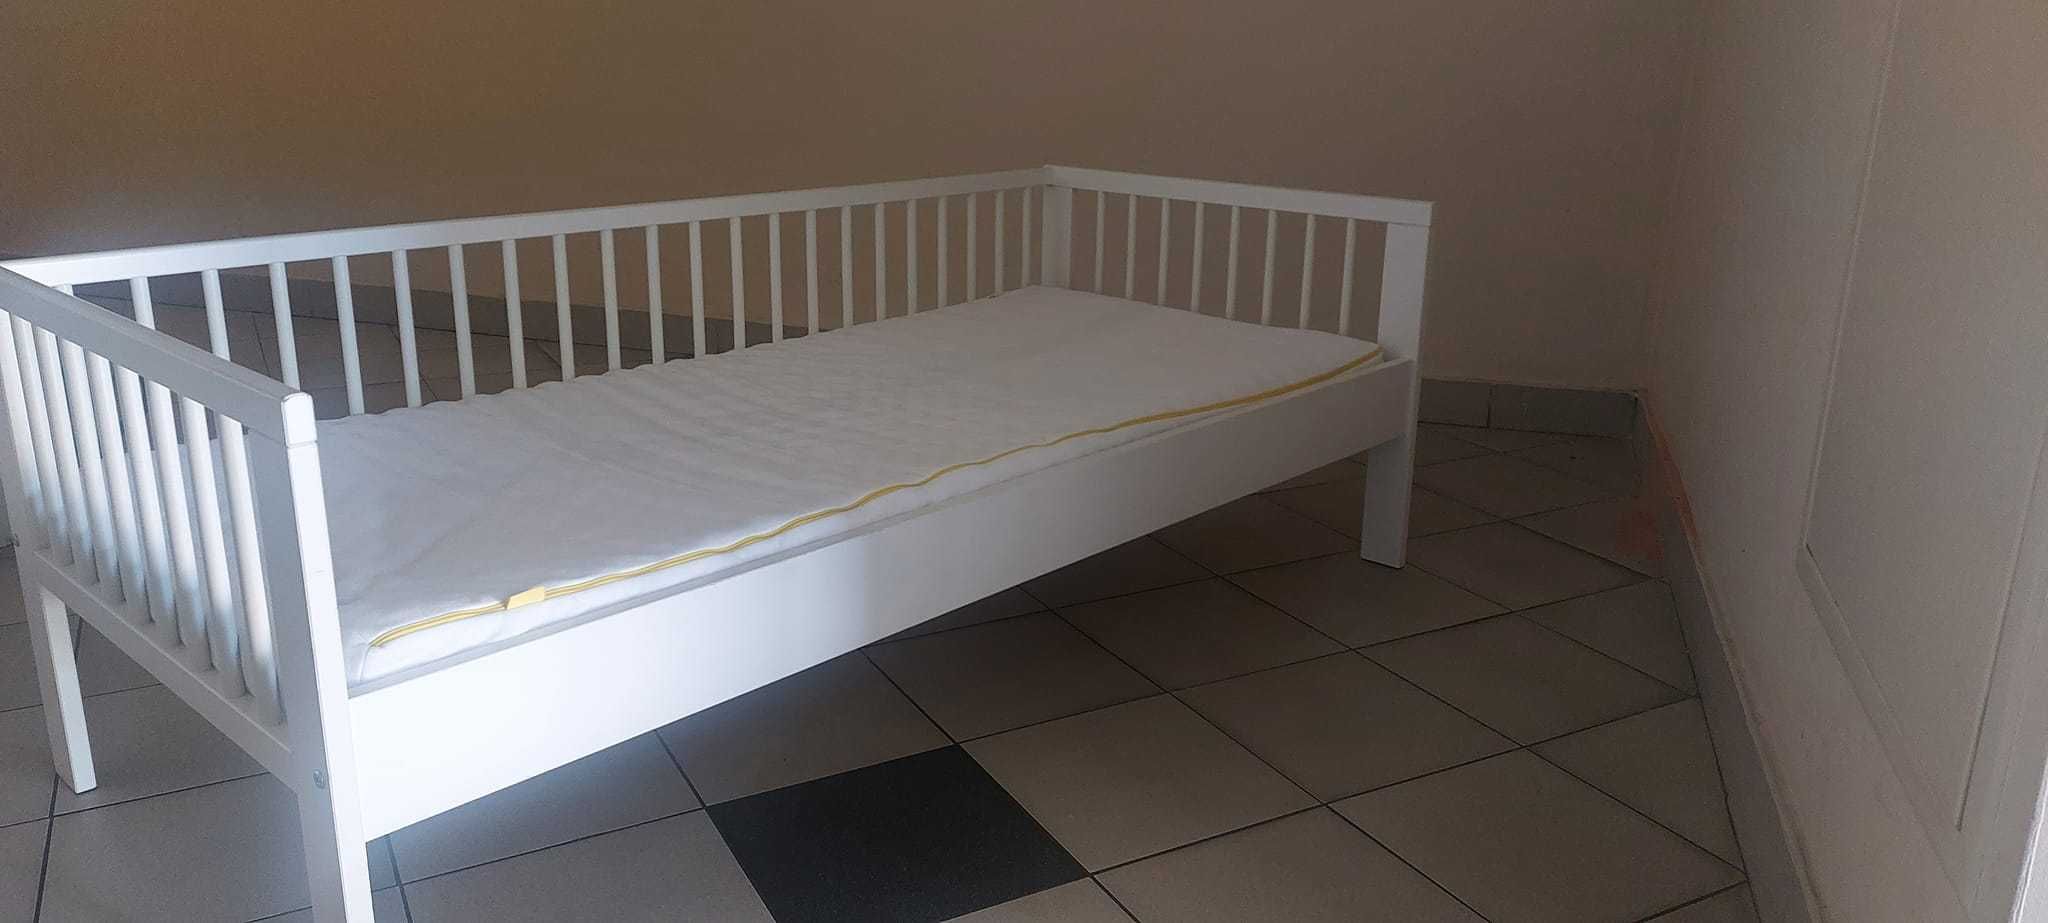 Łóżko Ikea Guliver 160 x 70 cm